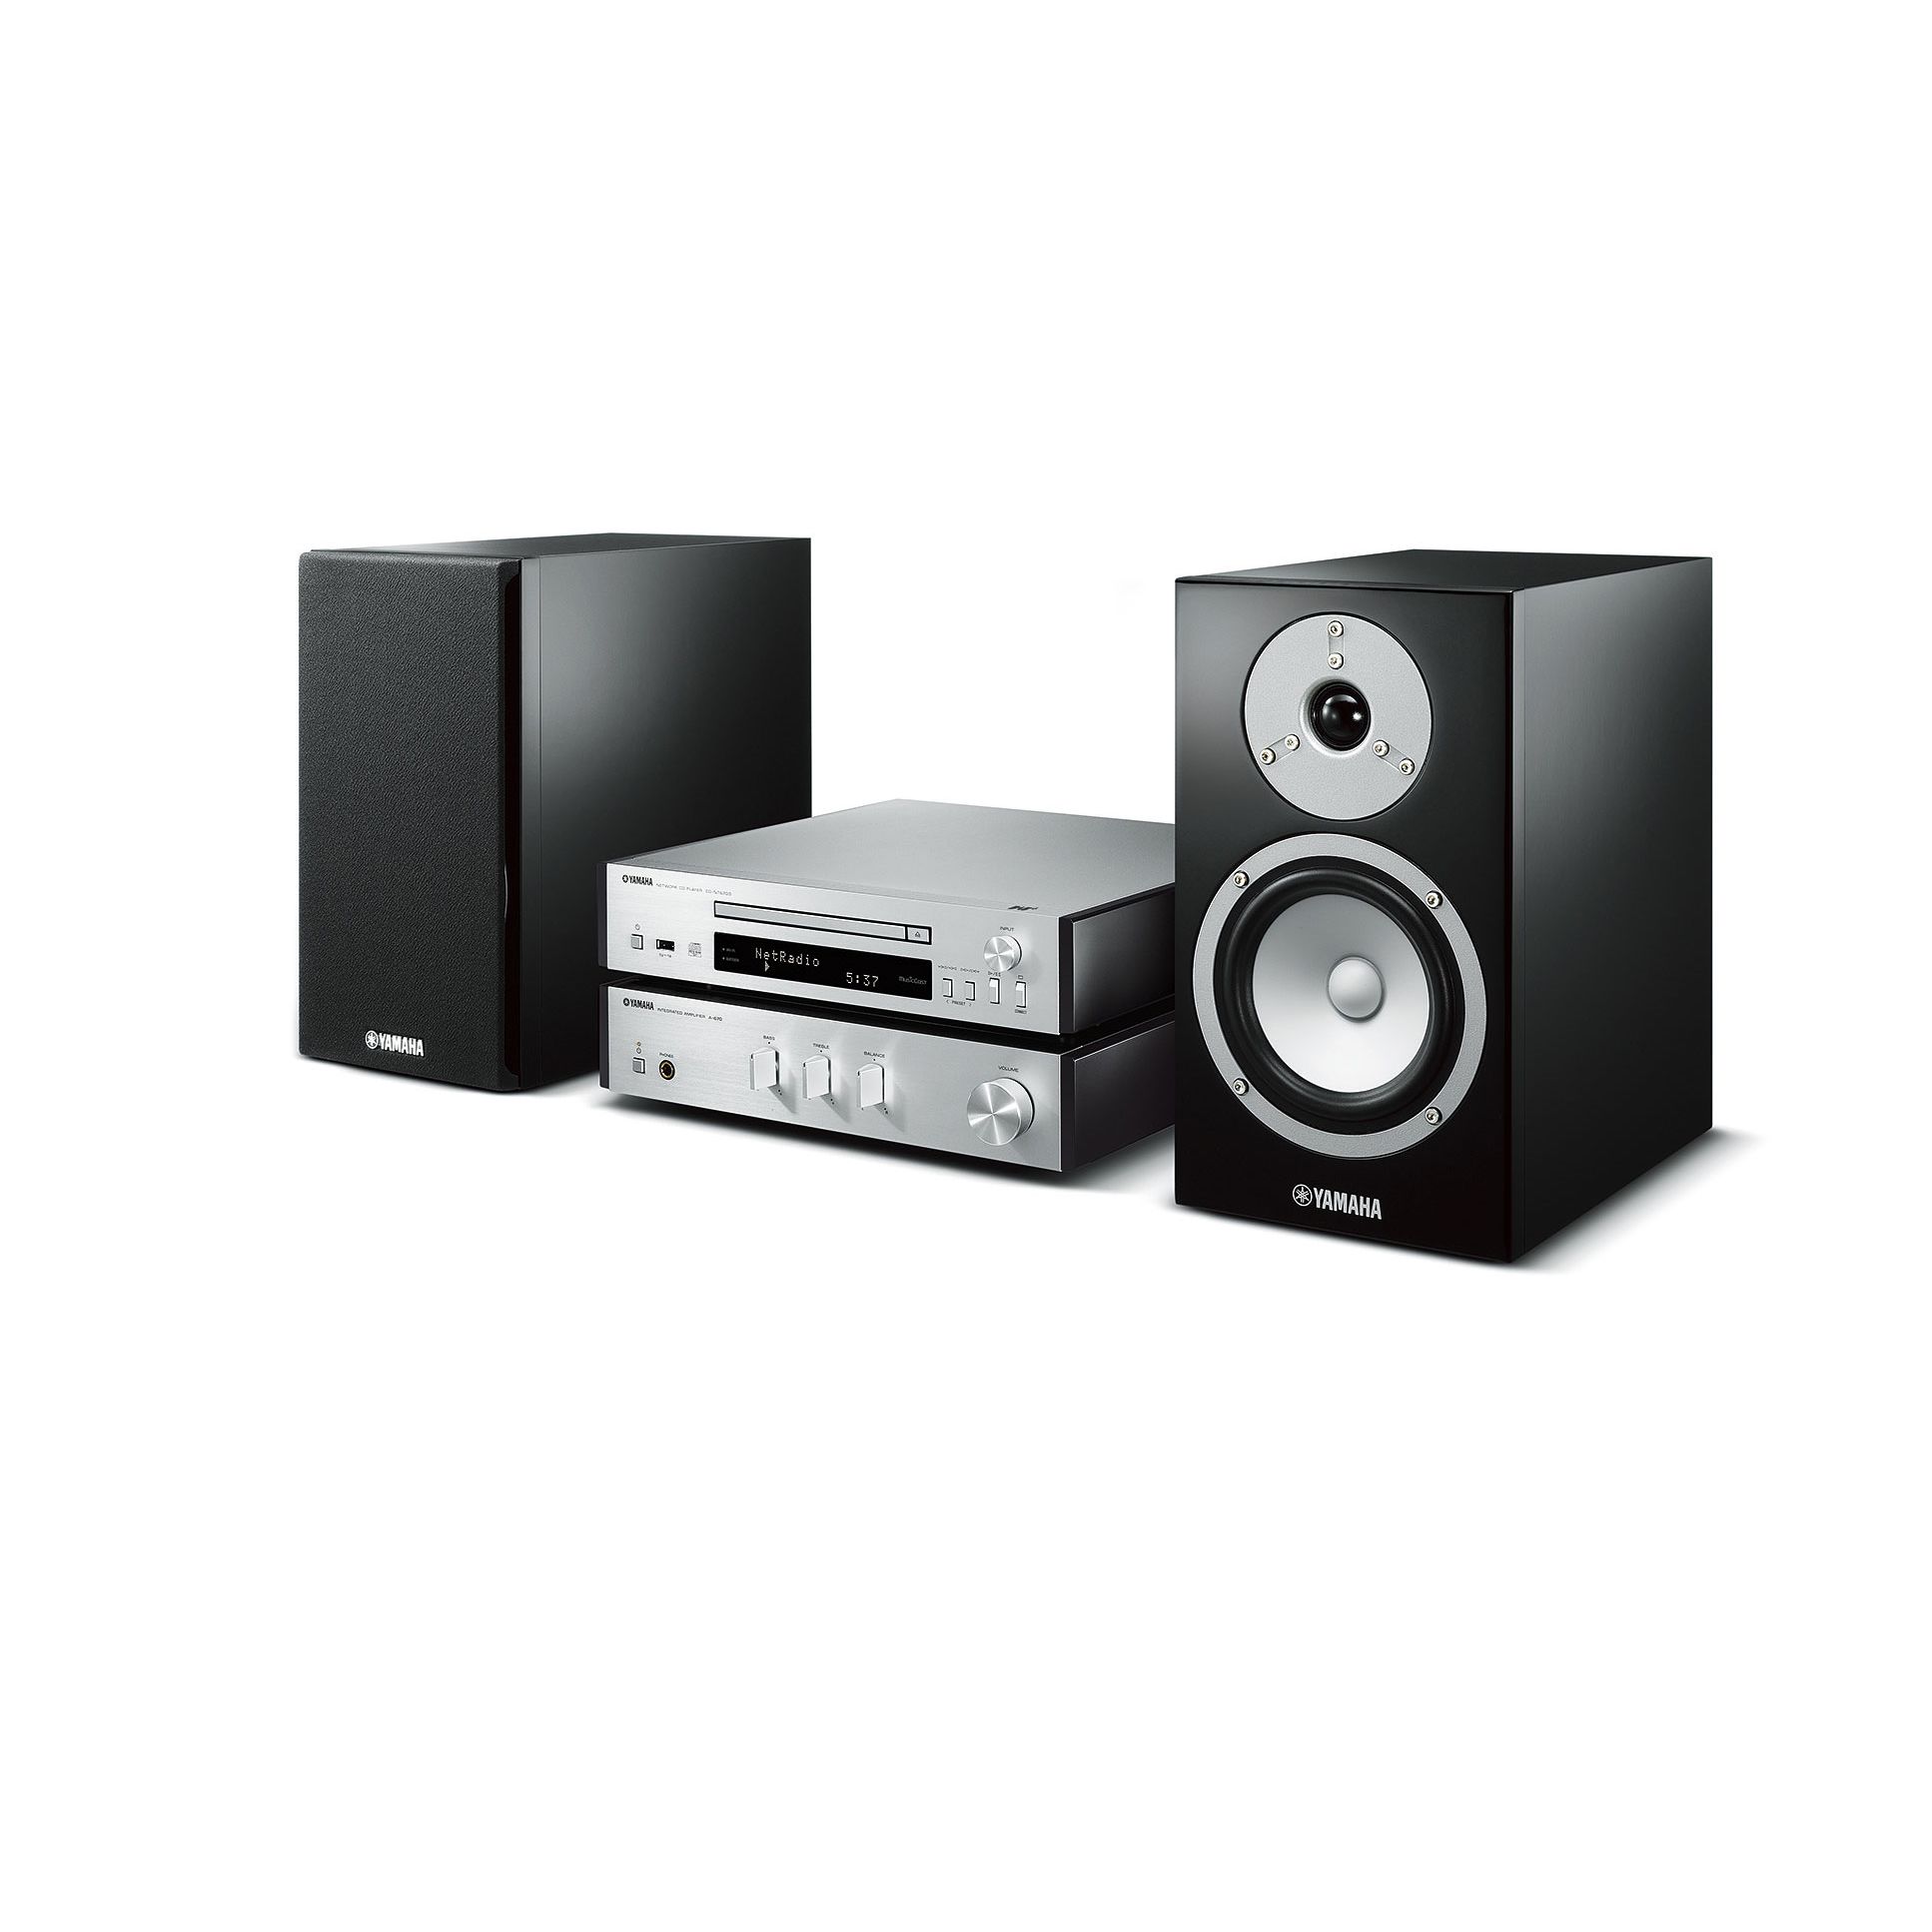 MusicCast MCR-N670D - Übersicht - HiFi-Systeme - Audio & Video ...